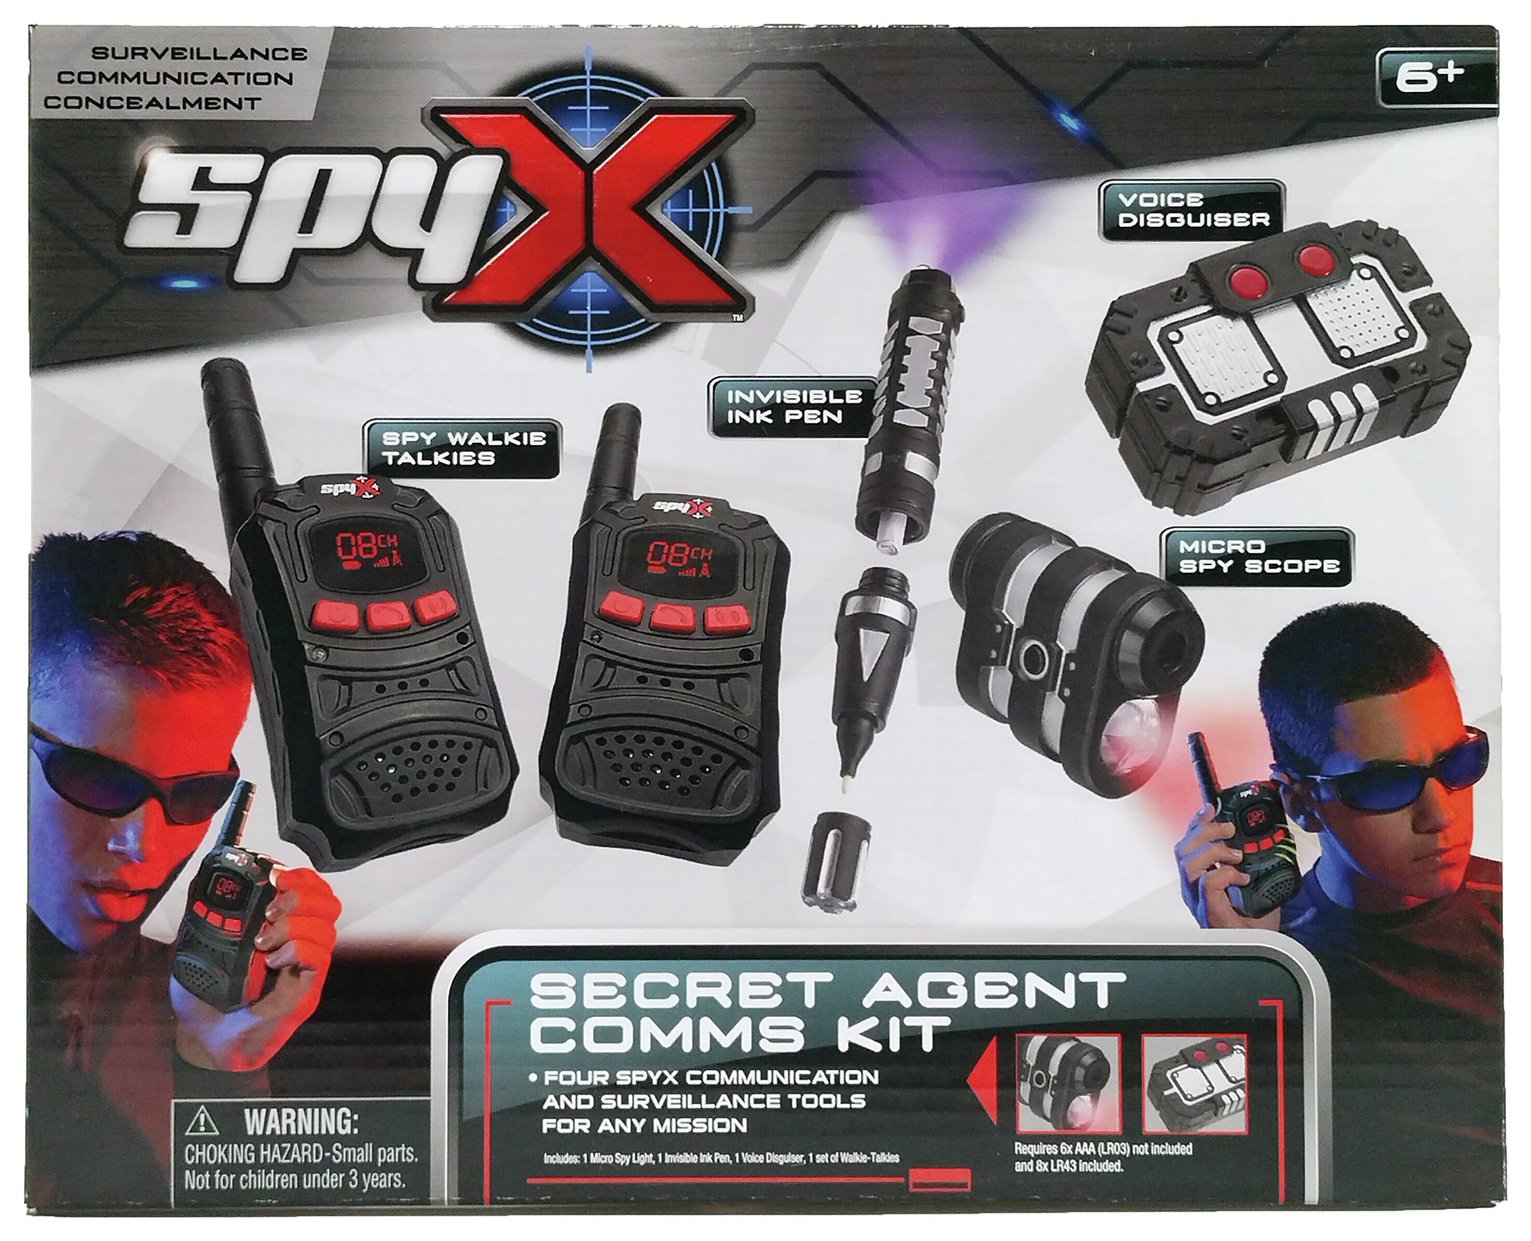 SpyX Secret Comms Kit